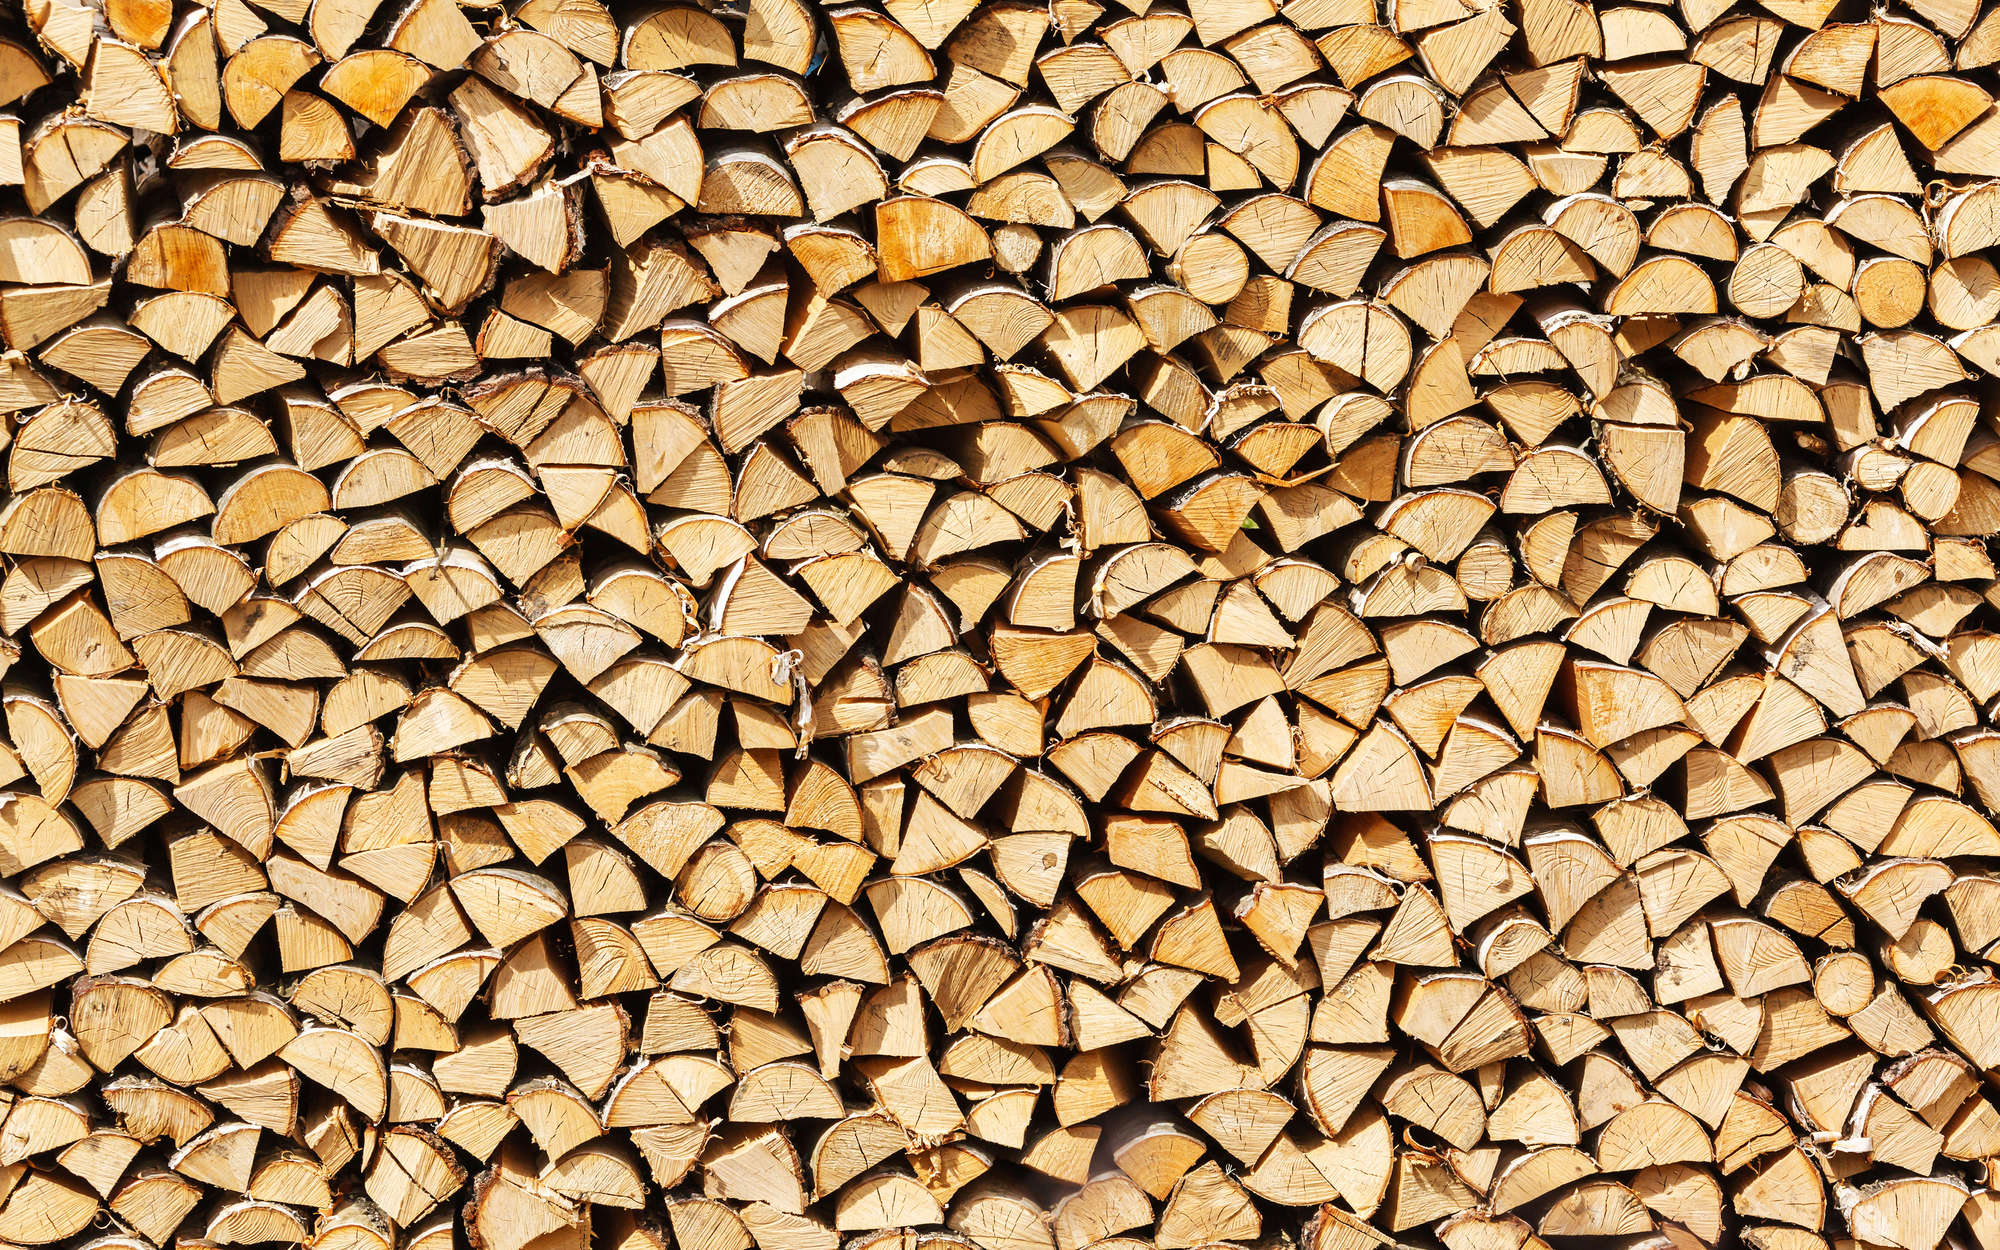             Fotomurali con legna da ardere accatastata, legna da ardere - Vello liscio Premium
        